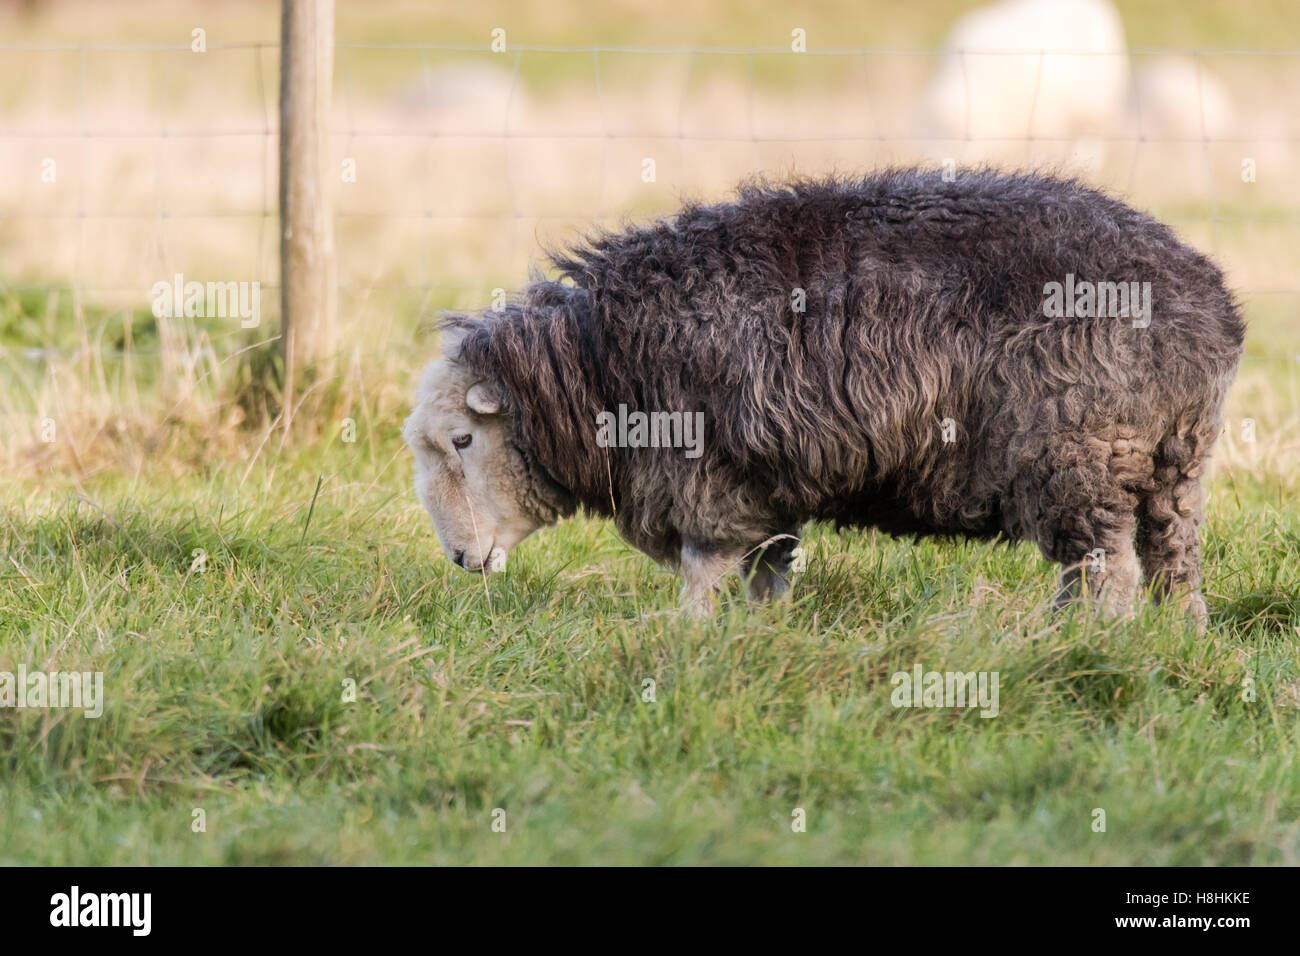 Herdwick Schaf Weiden im Feld. Inländische Schafe züchten native zum Lake District in Cumbria, geschätzt für harte Merkmale Stockfoto